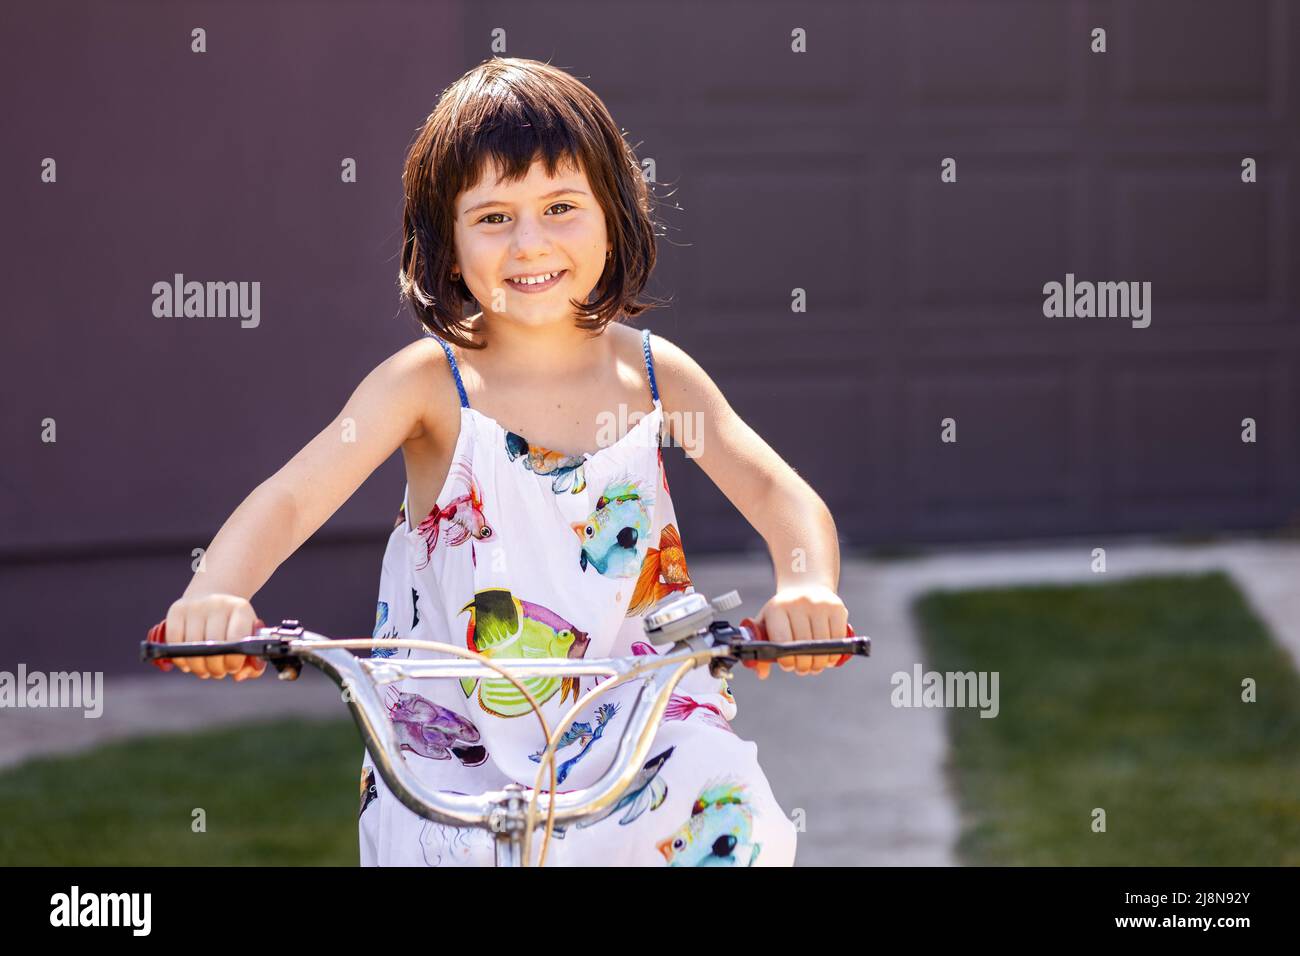 Glückliches kleines Mädchen, das Fahrrad auf einer Gasse reitet, während es die Kamera anschaut und lächelt Stockfoto